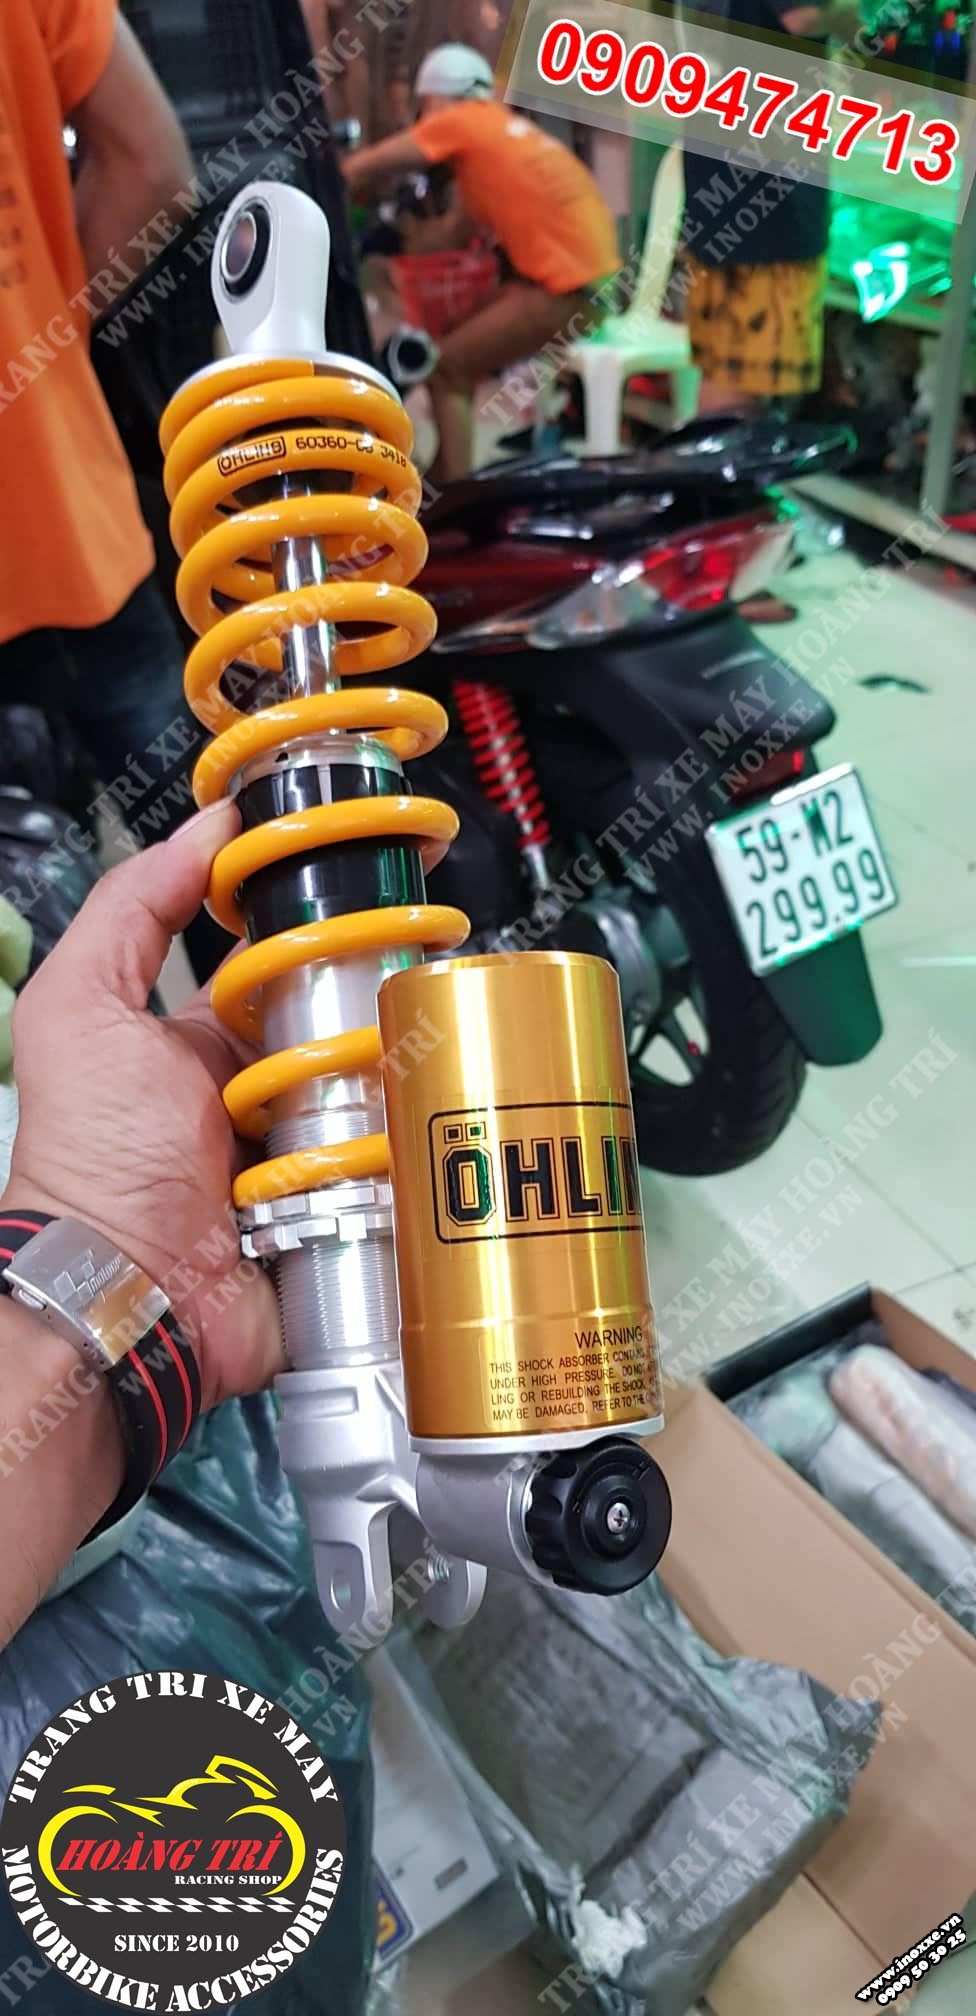 Phuộc bình dầu Ohlins chính hãng Thái Lan gắn Sh Mode